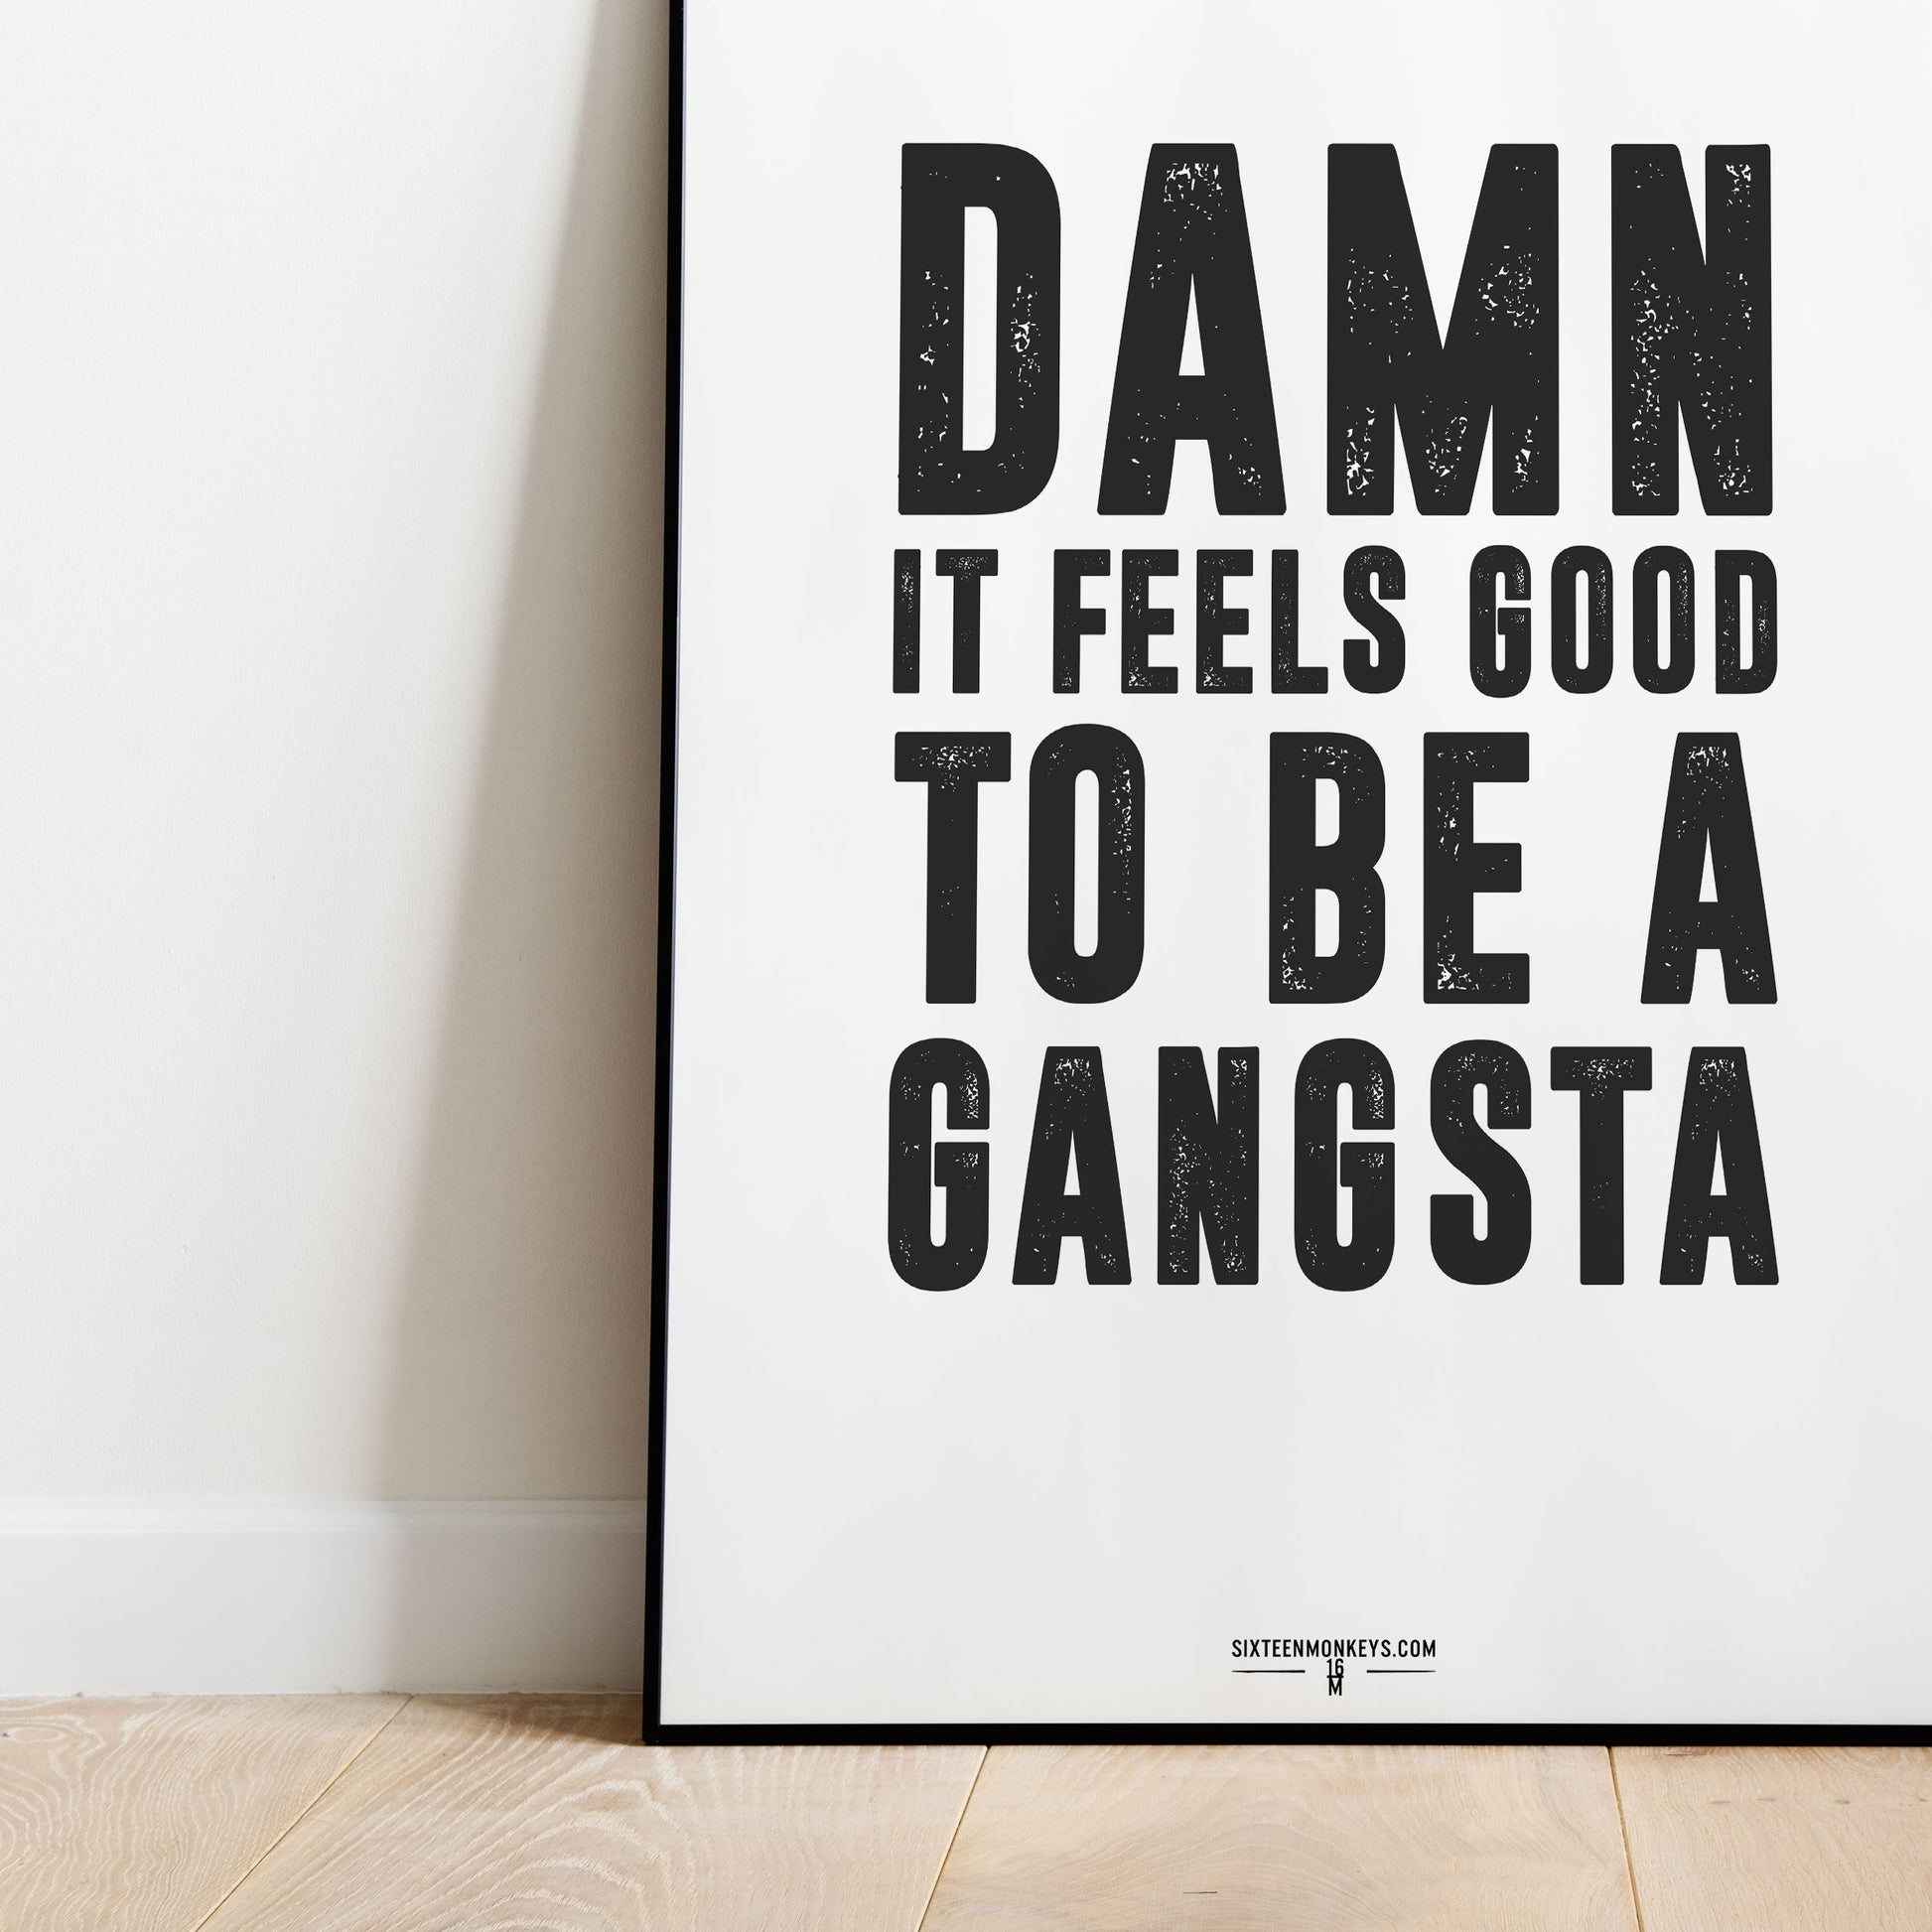 ‘Good to be a Gangsta’ Art Print